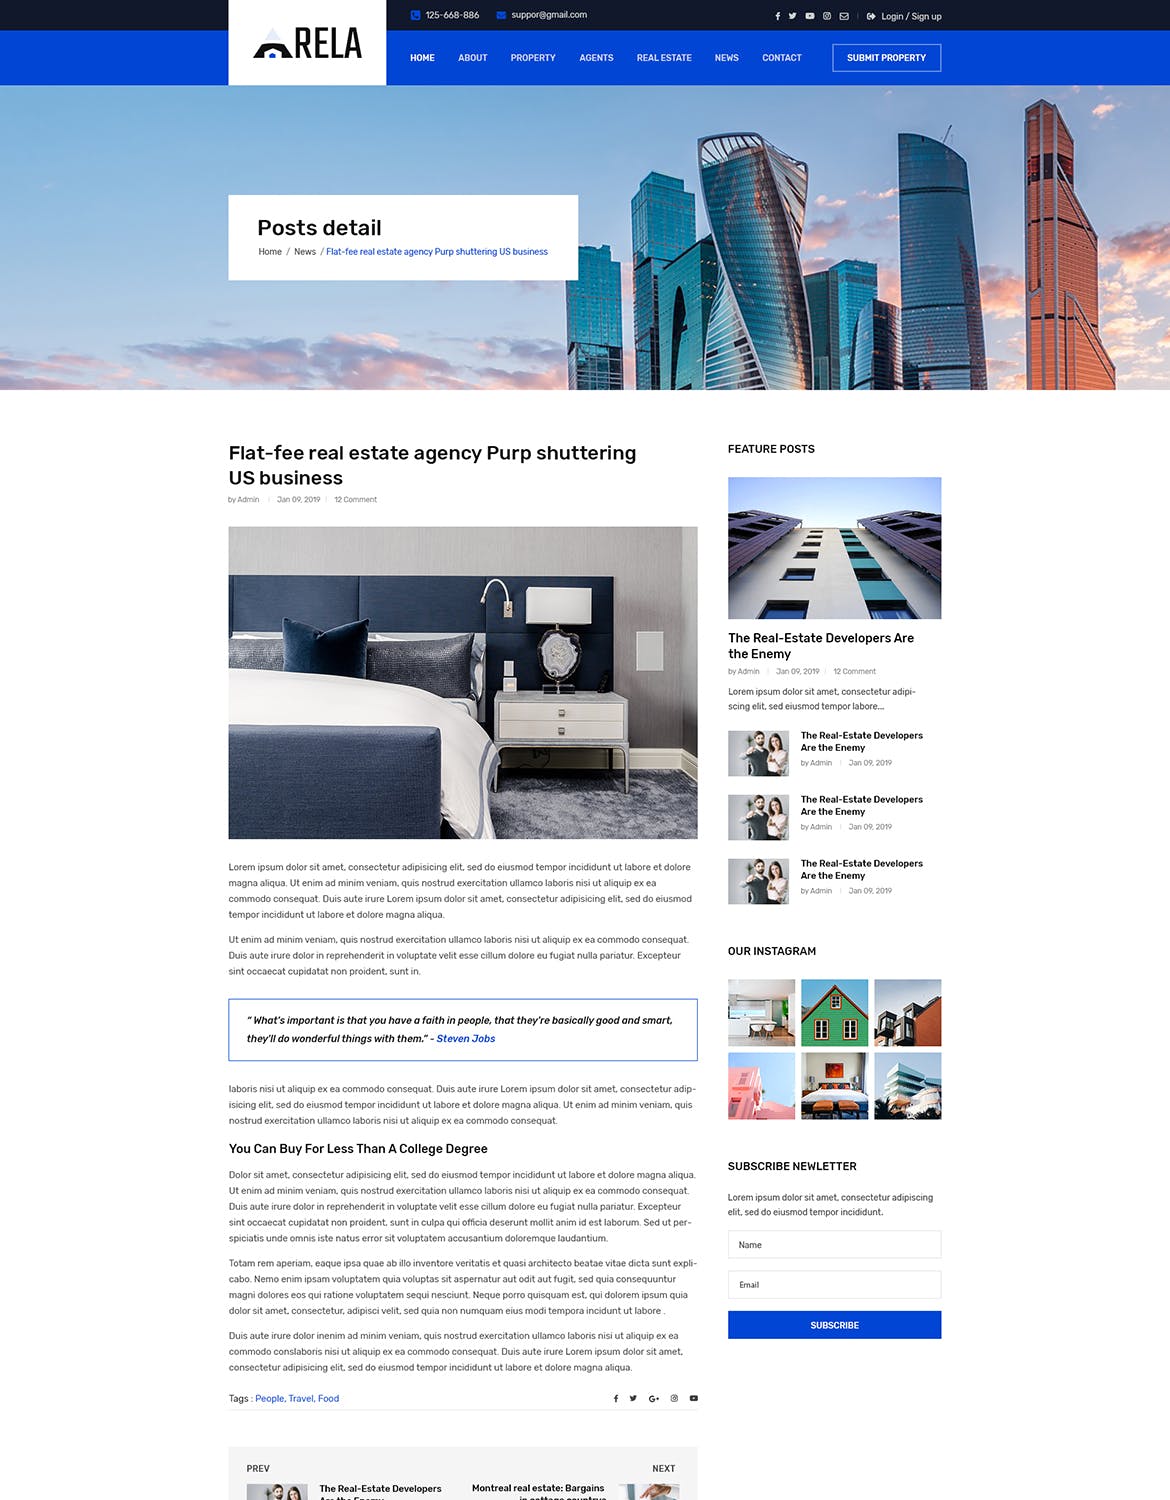 房地产经销商城网站设计PSD模板 Arela | Real Estate PSD Template插图(15)